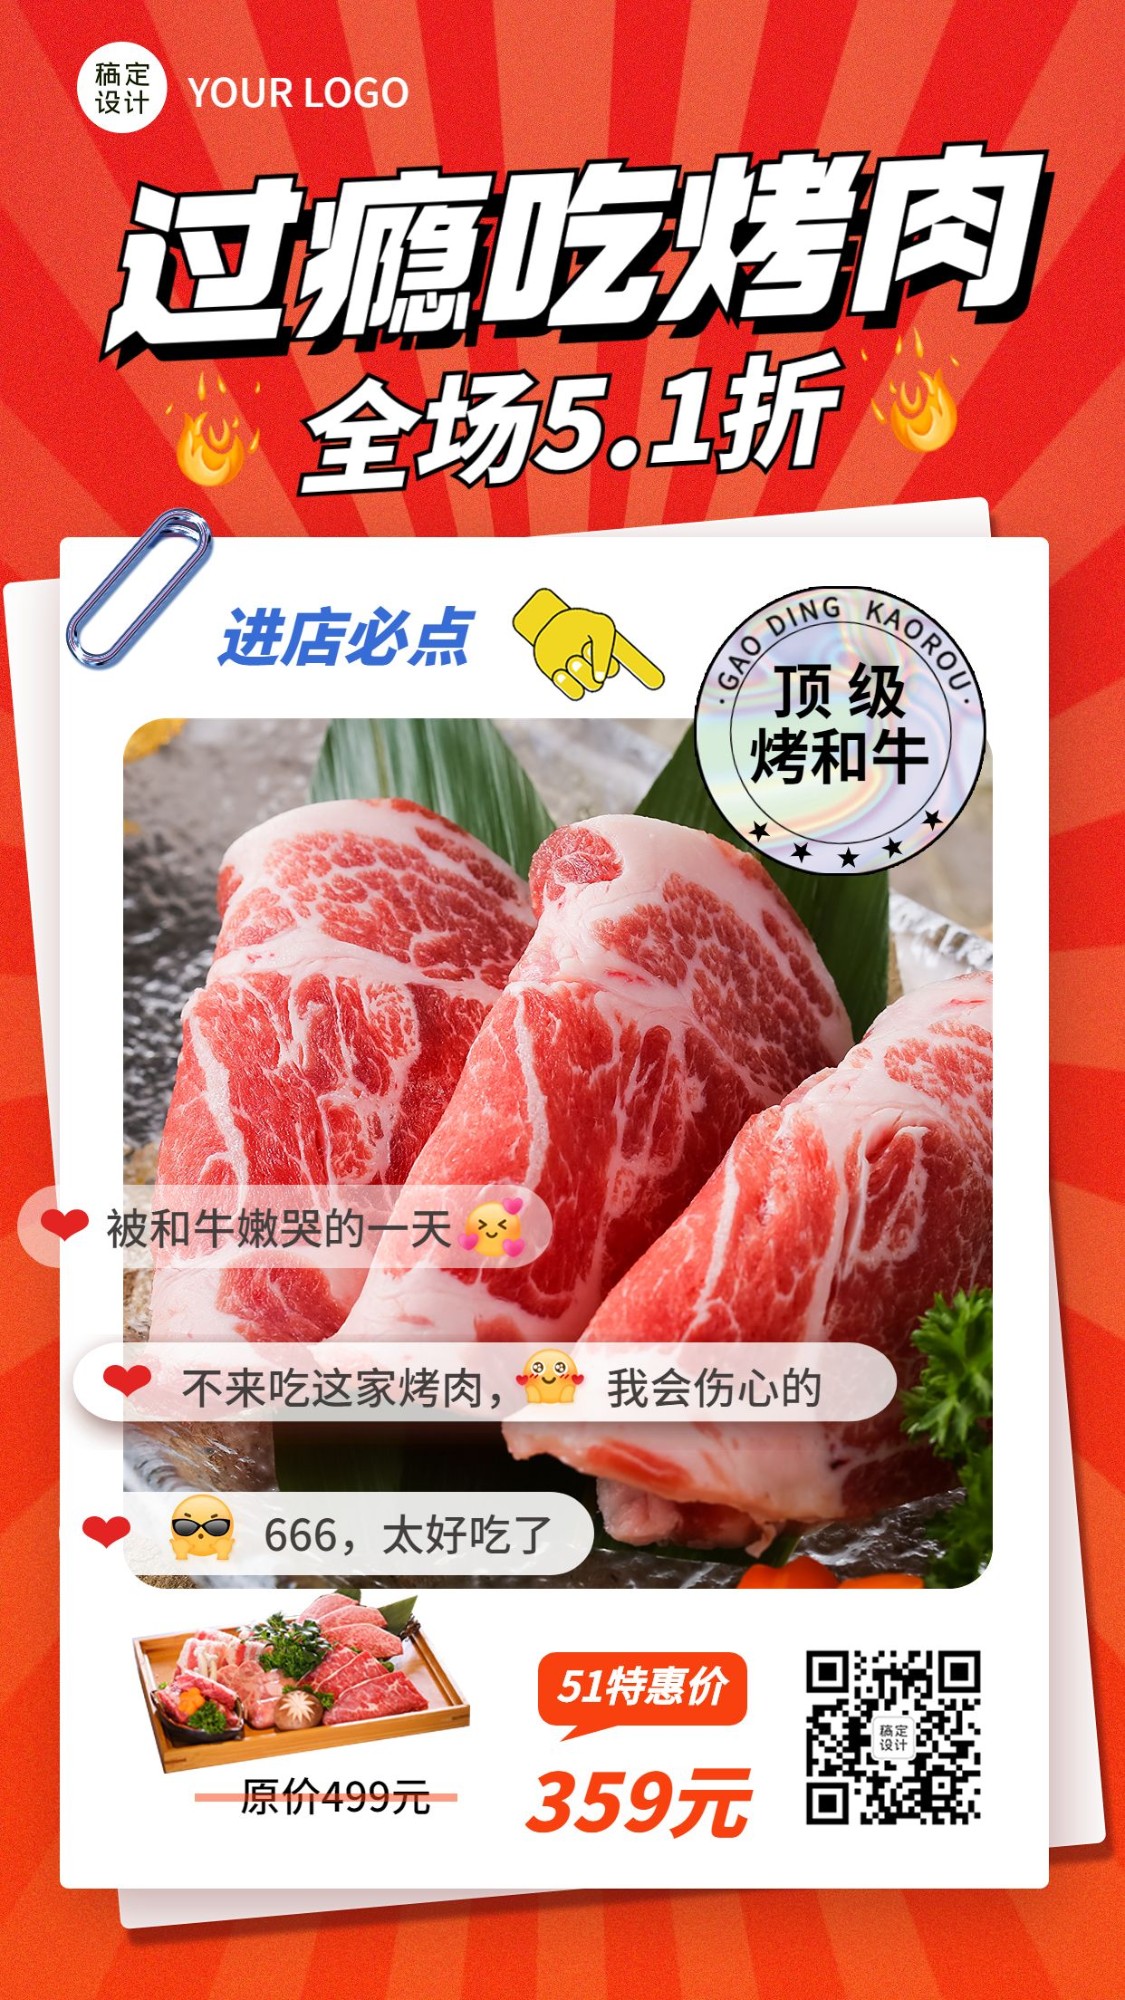 五一劳动节美食烤肉产品促销手机海报预览效果